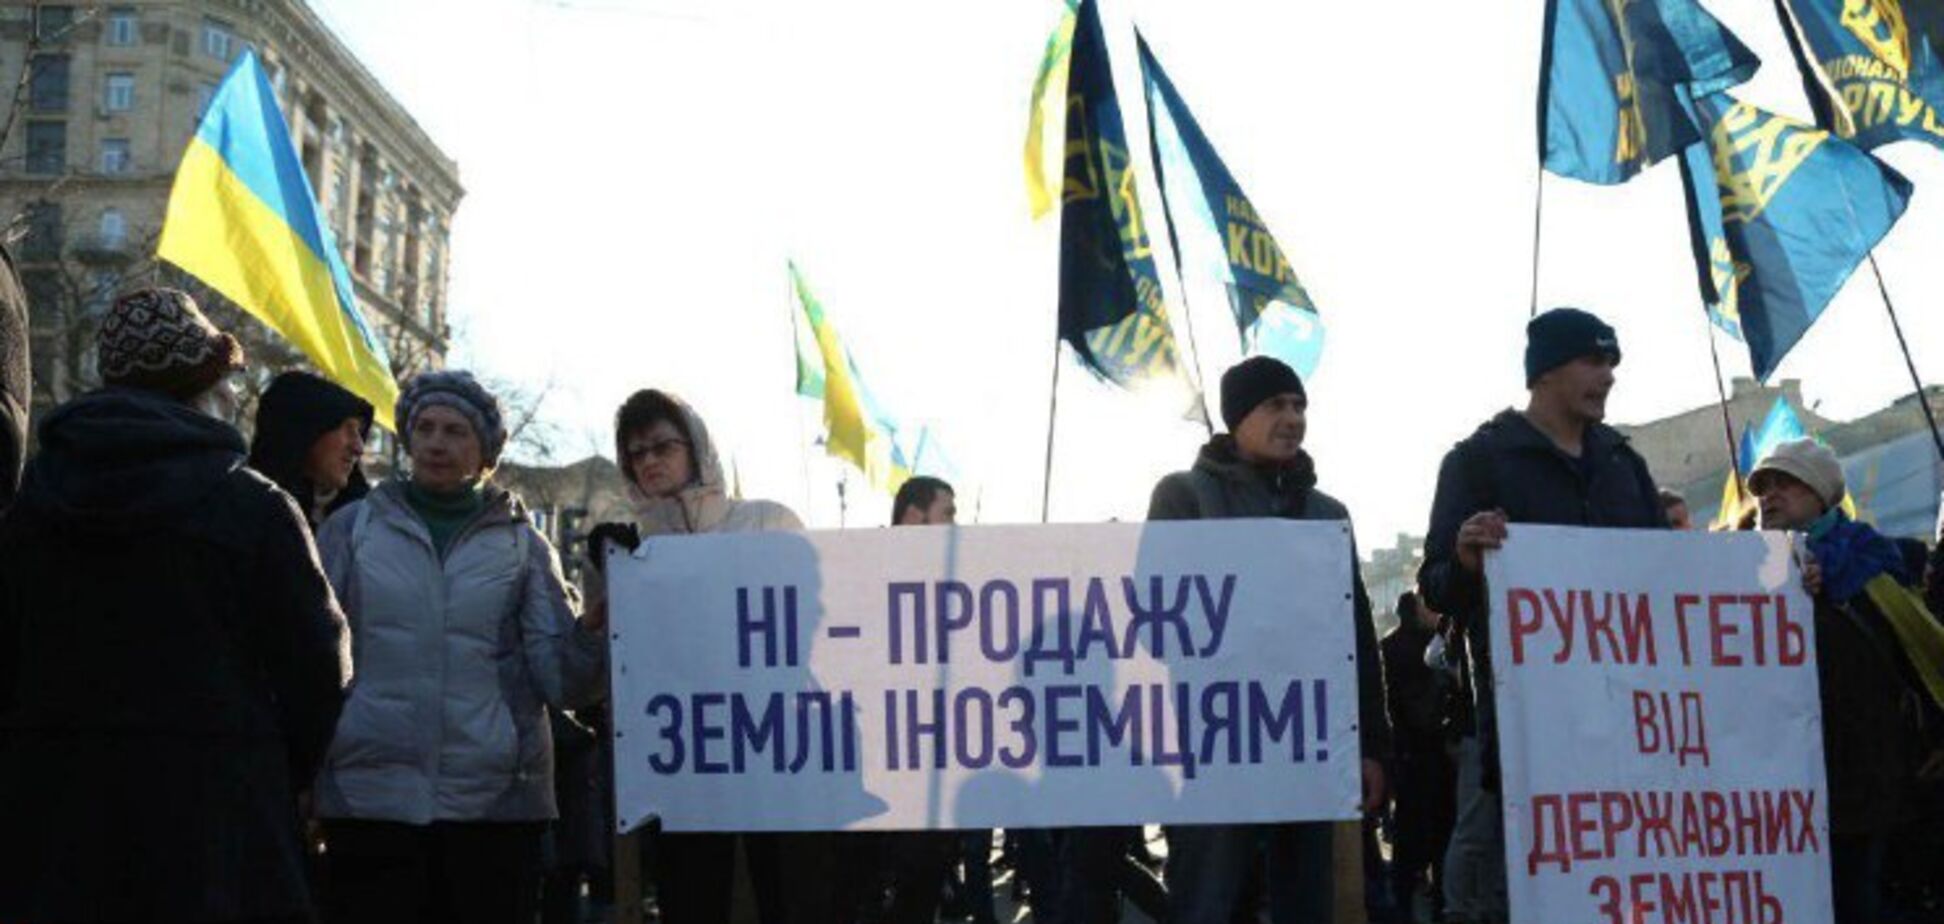 'Руки геть від землі': Нацкорпус заблокував центр Києва. Фото